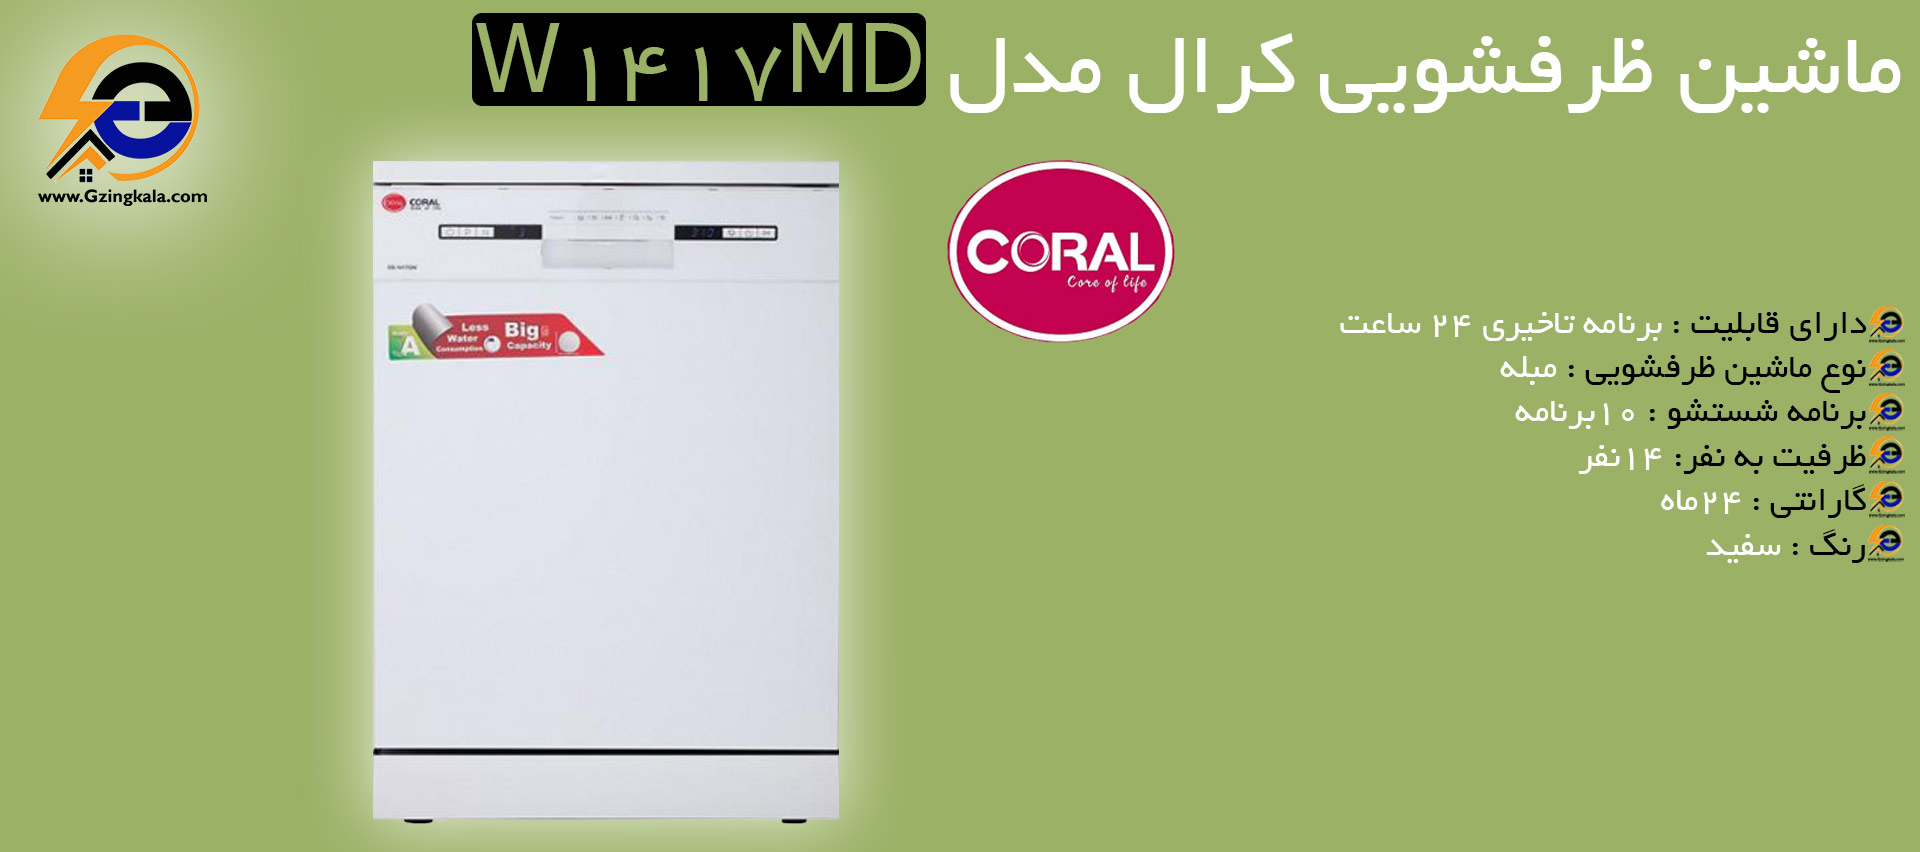 ماشین ظرفشویی کرال مدل W1417MD